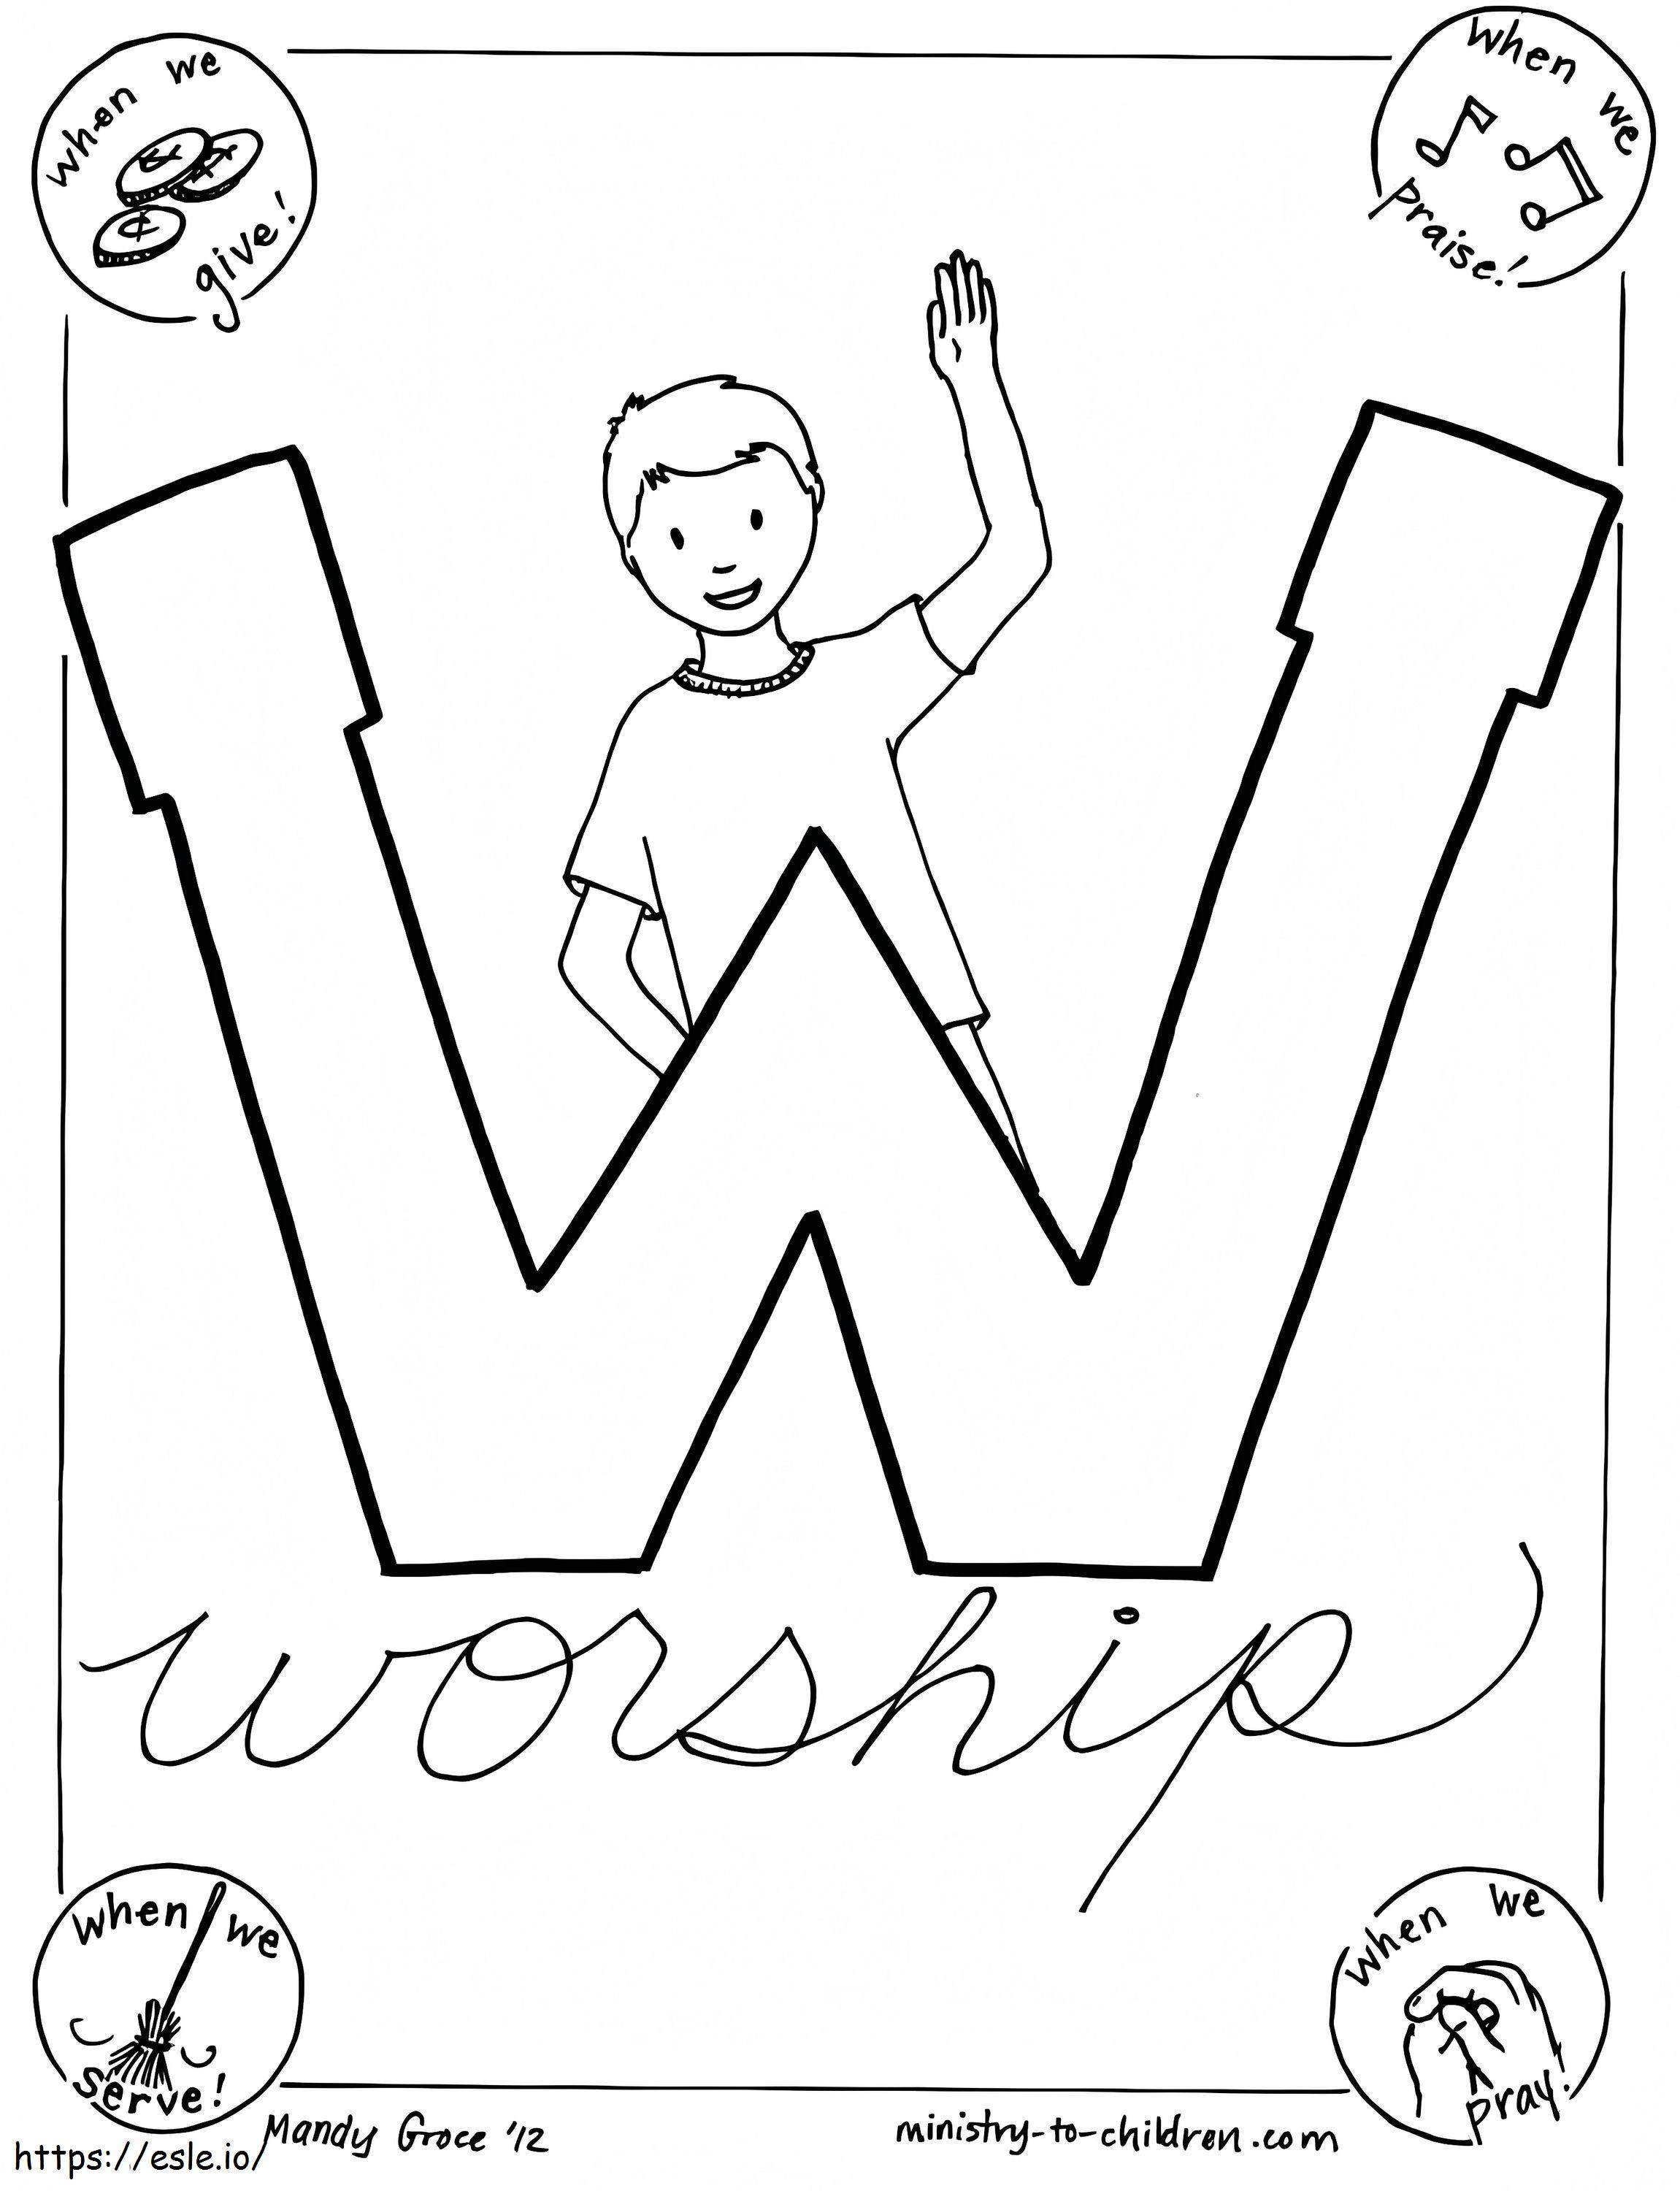 W este pentru închinare de colorat